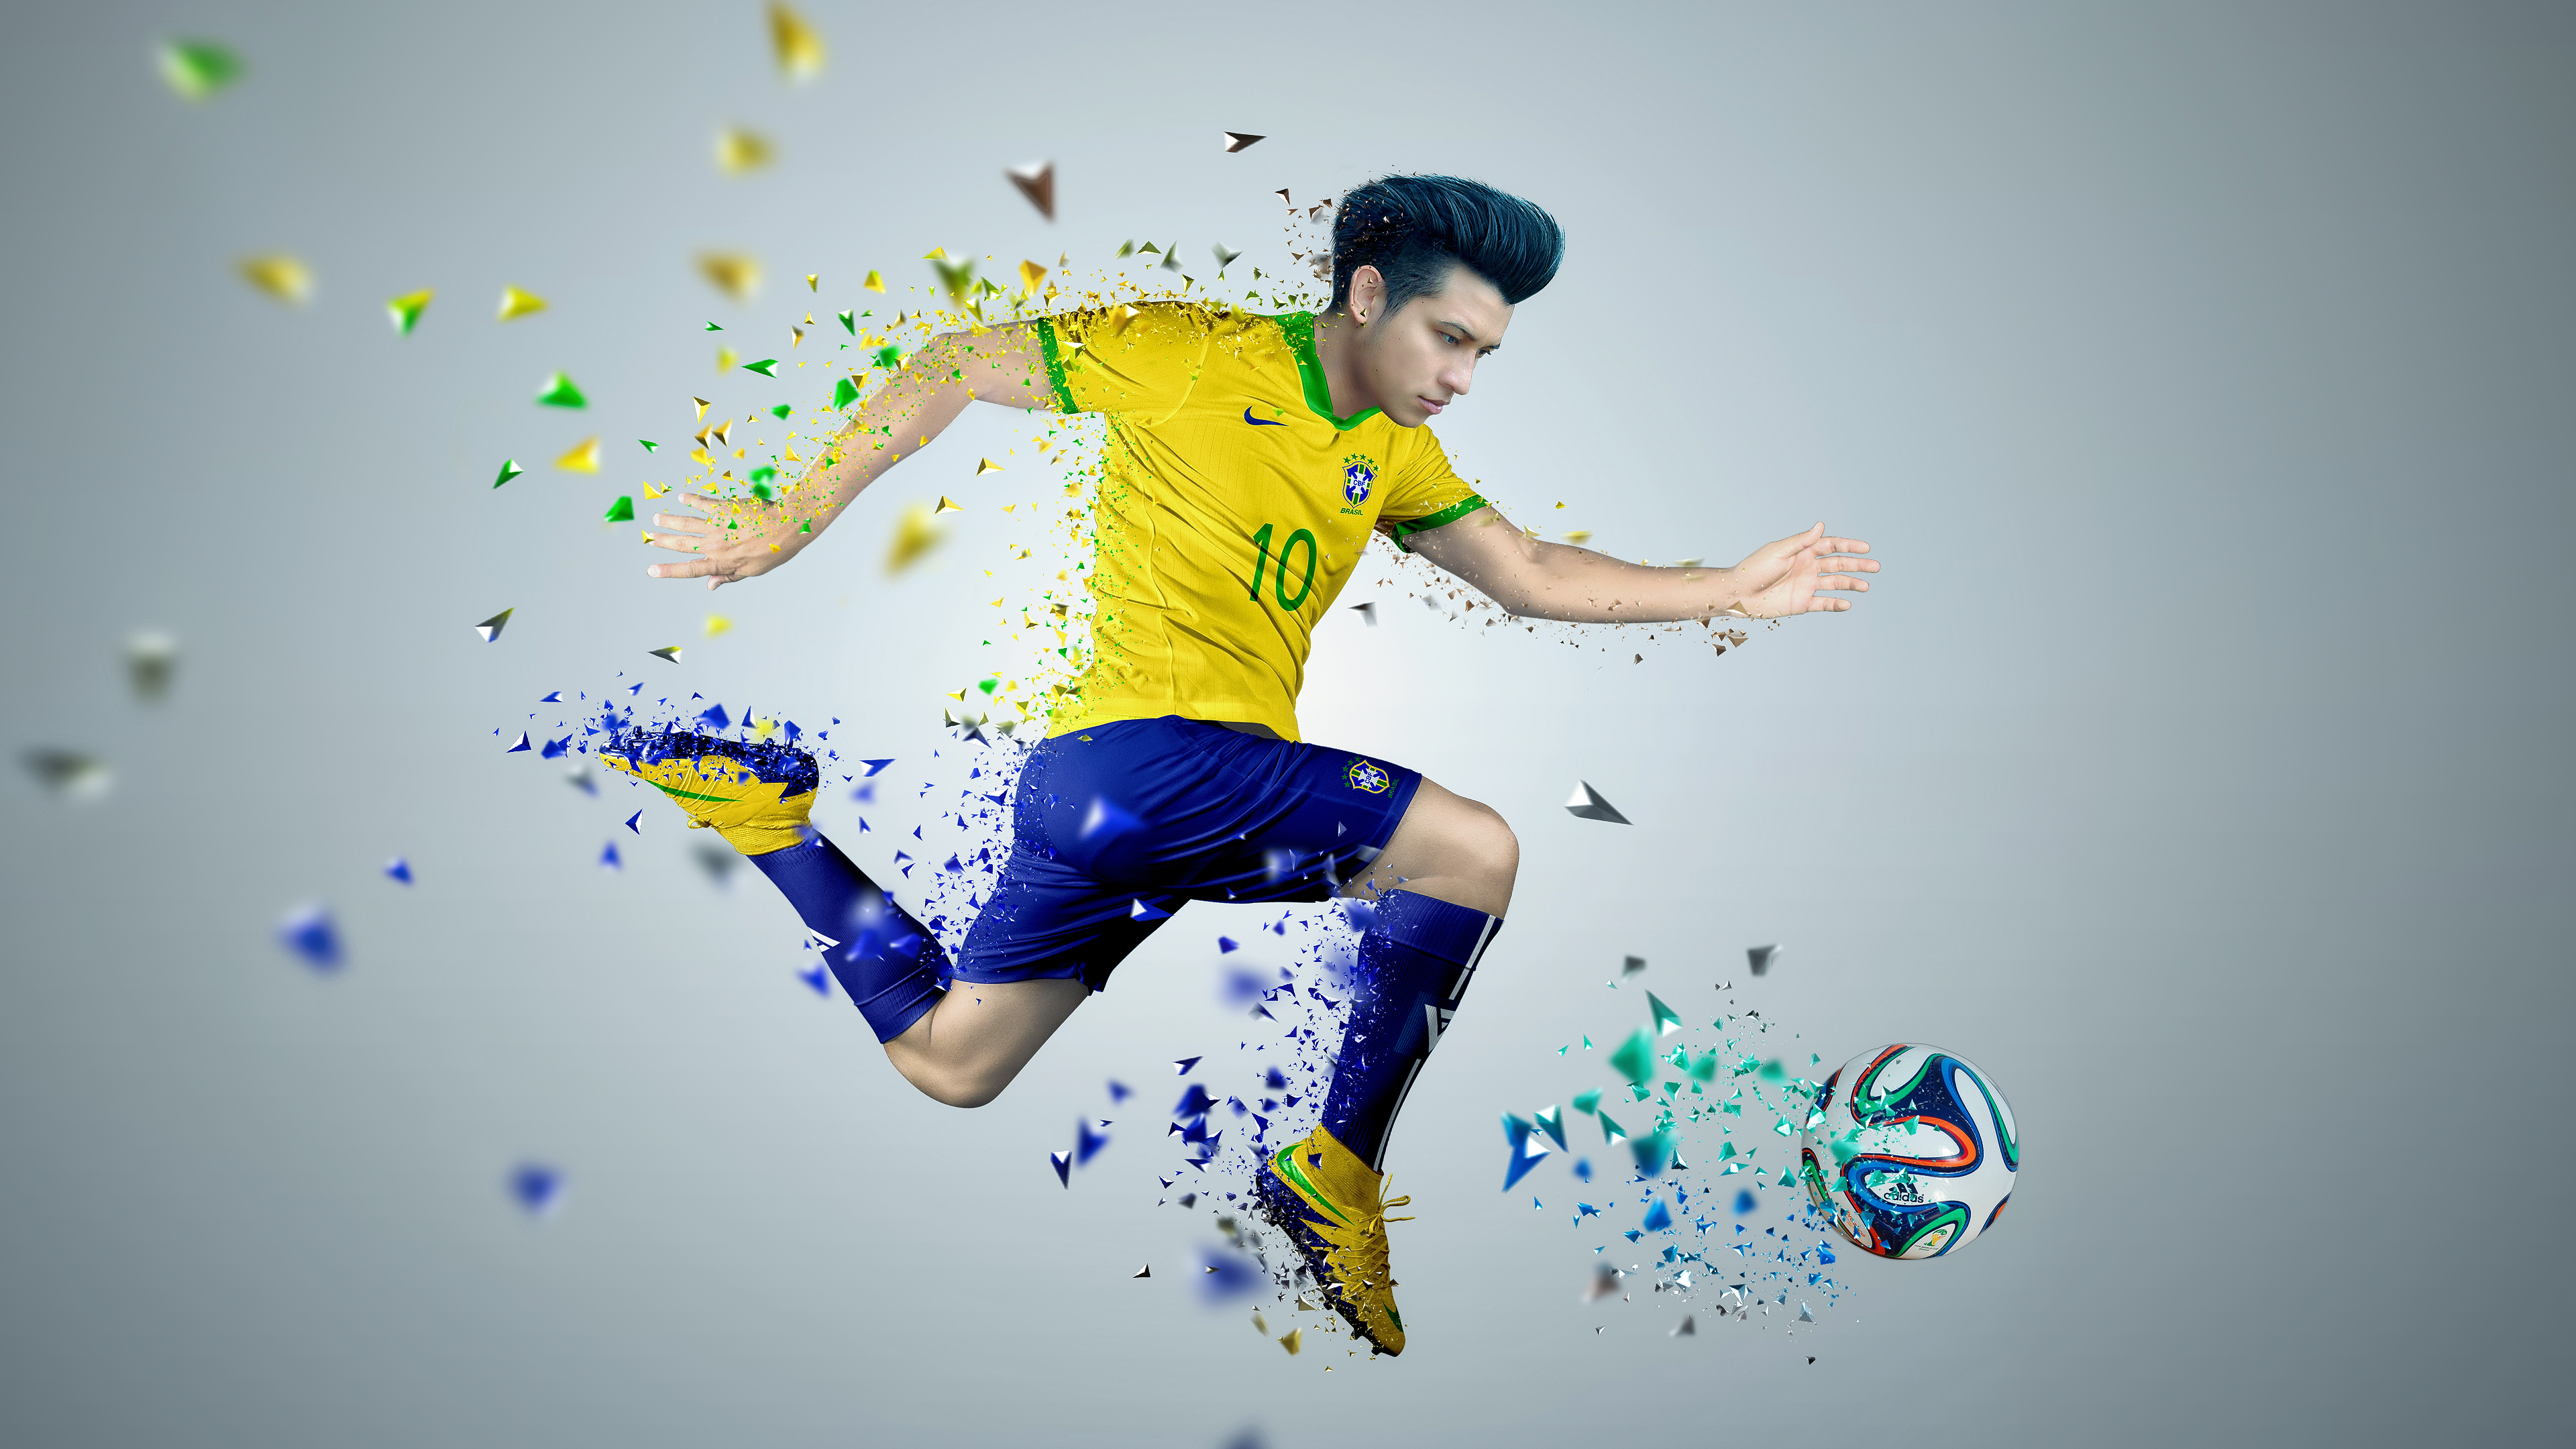 Digital Art Fan Art Photoshop Soccer Sport 3840x2160